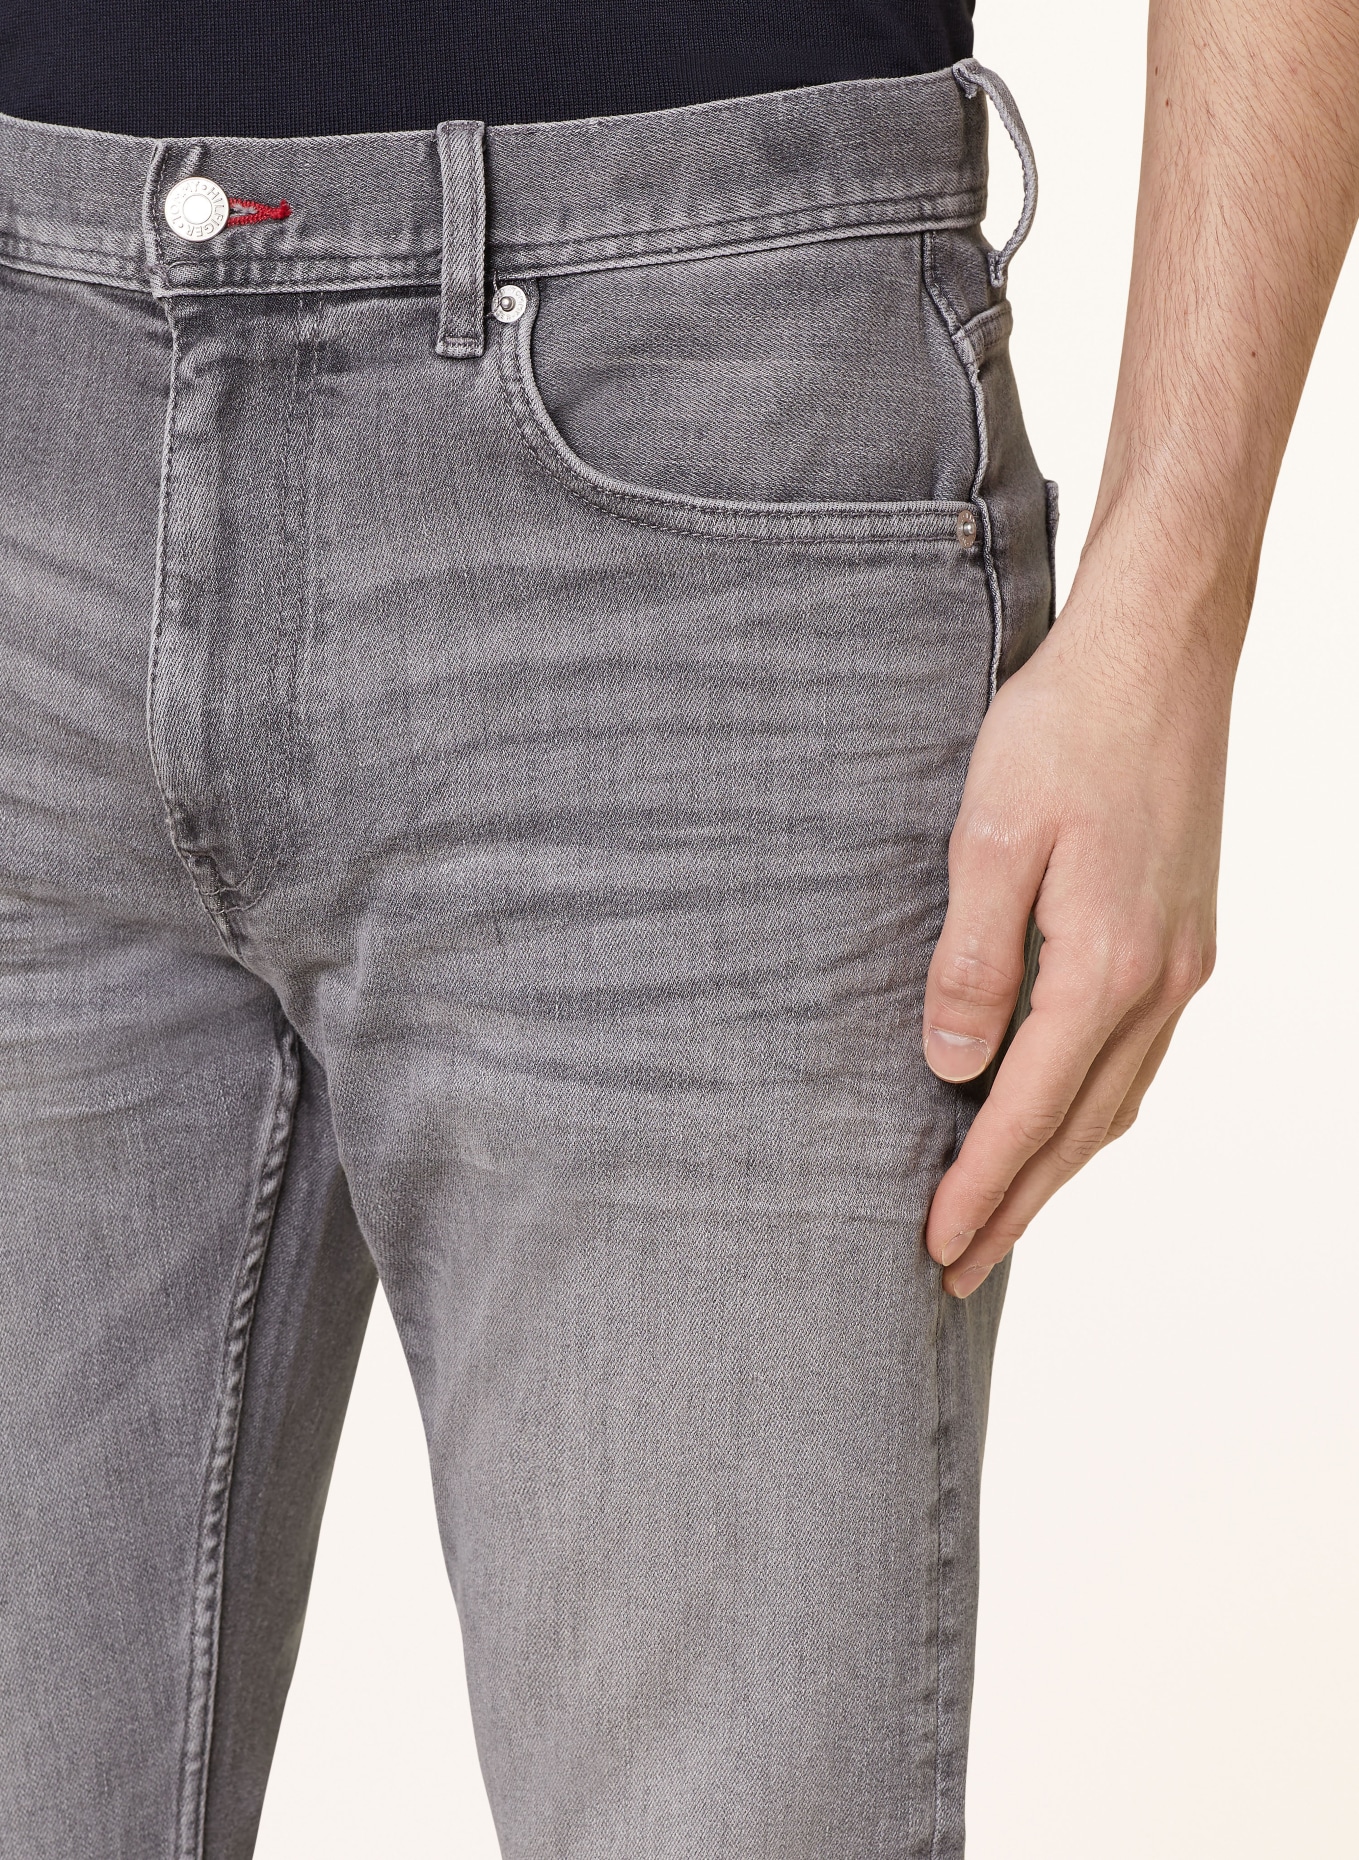 TOMMY HILFIGER Jeans HOUSTON Slim Taper Fit, Farbe: 1B5 Bower Grey (Bild 5)